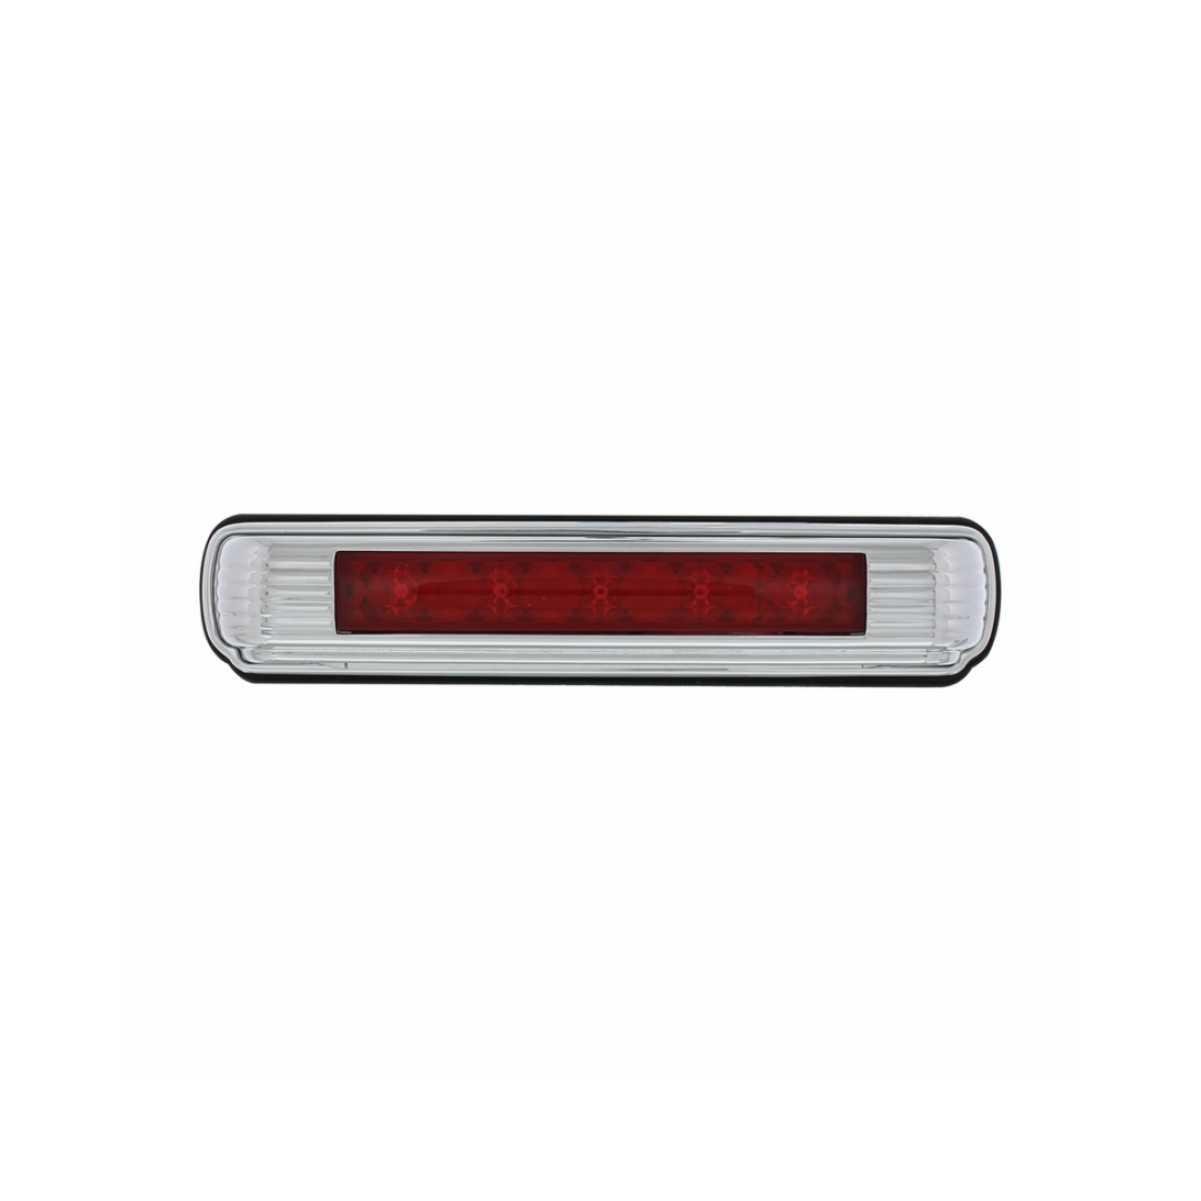 Red LED 11 LED Chrome License Plate Light w/ Third Brake Light 